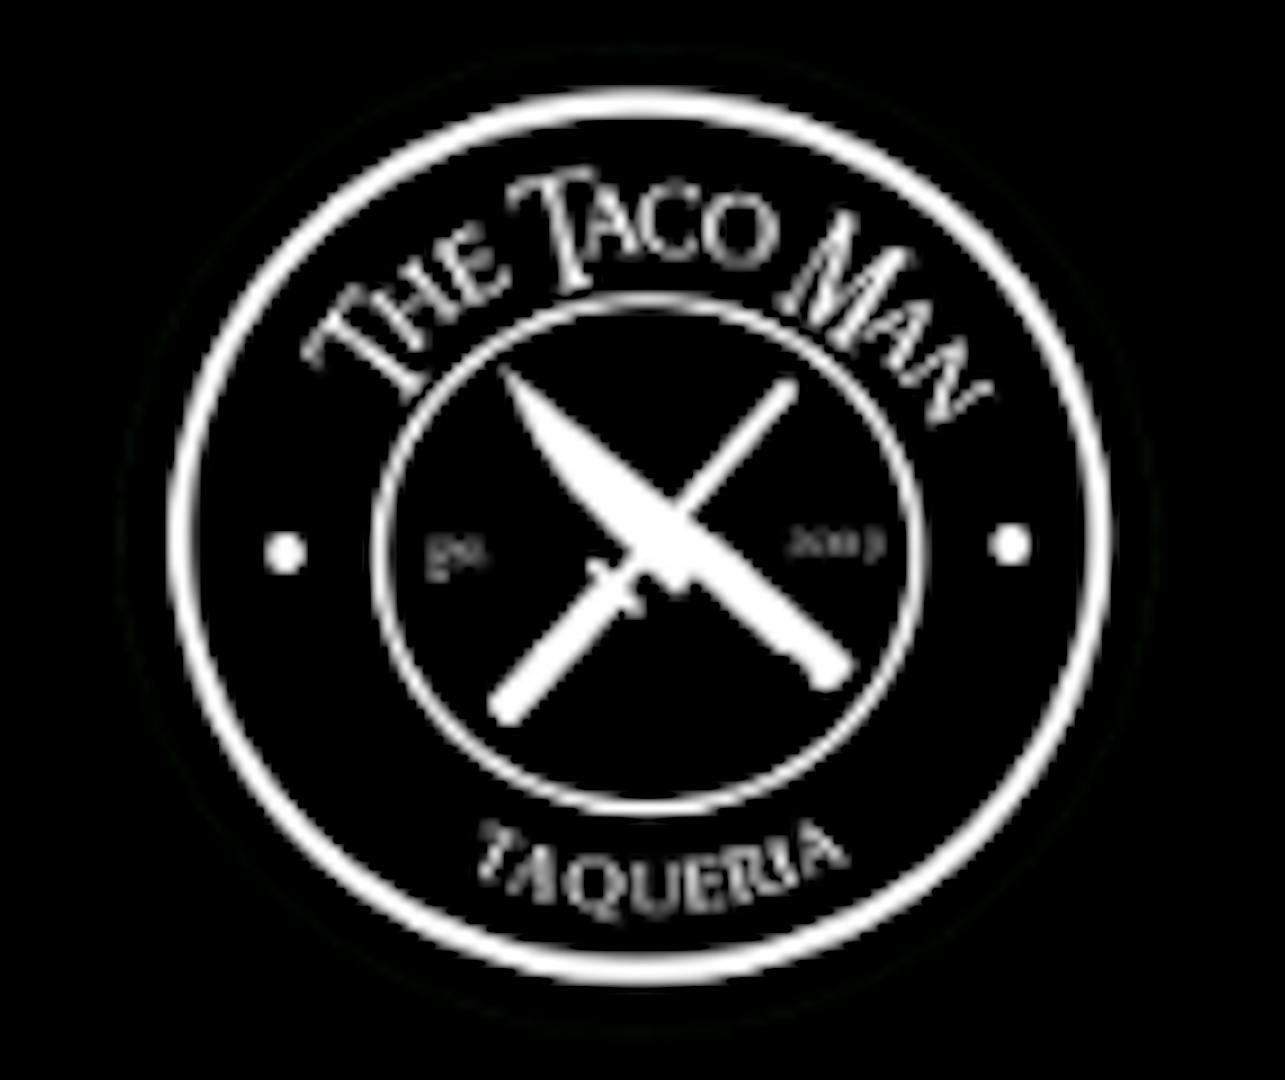 The Taco Man